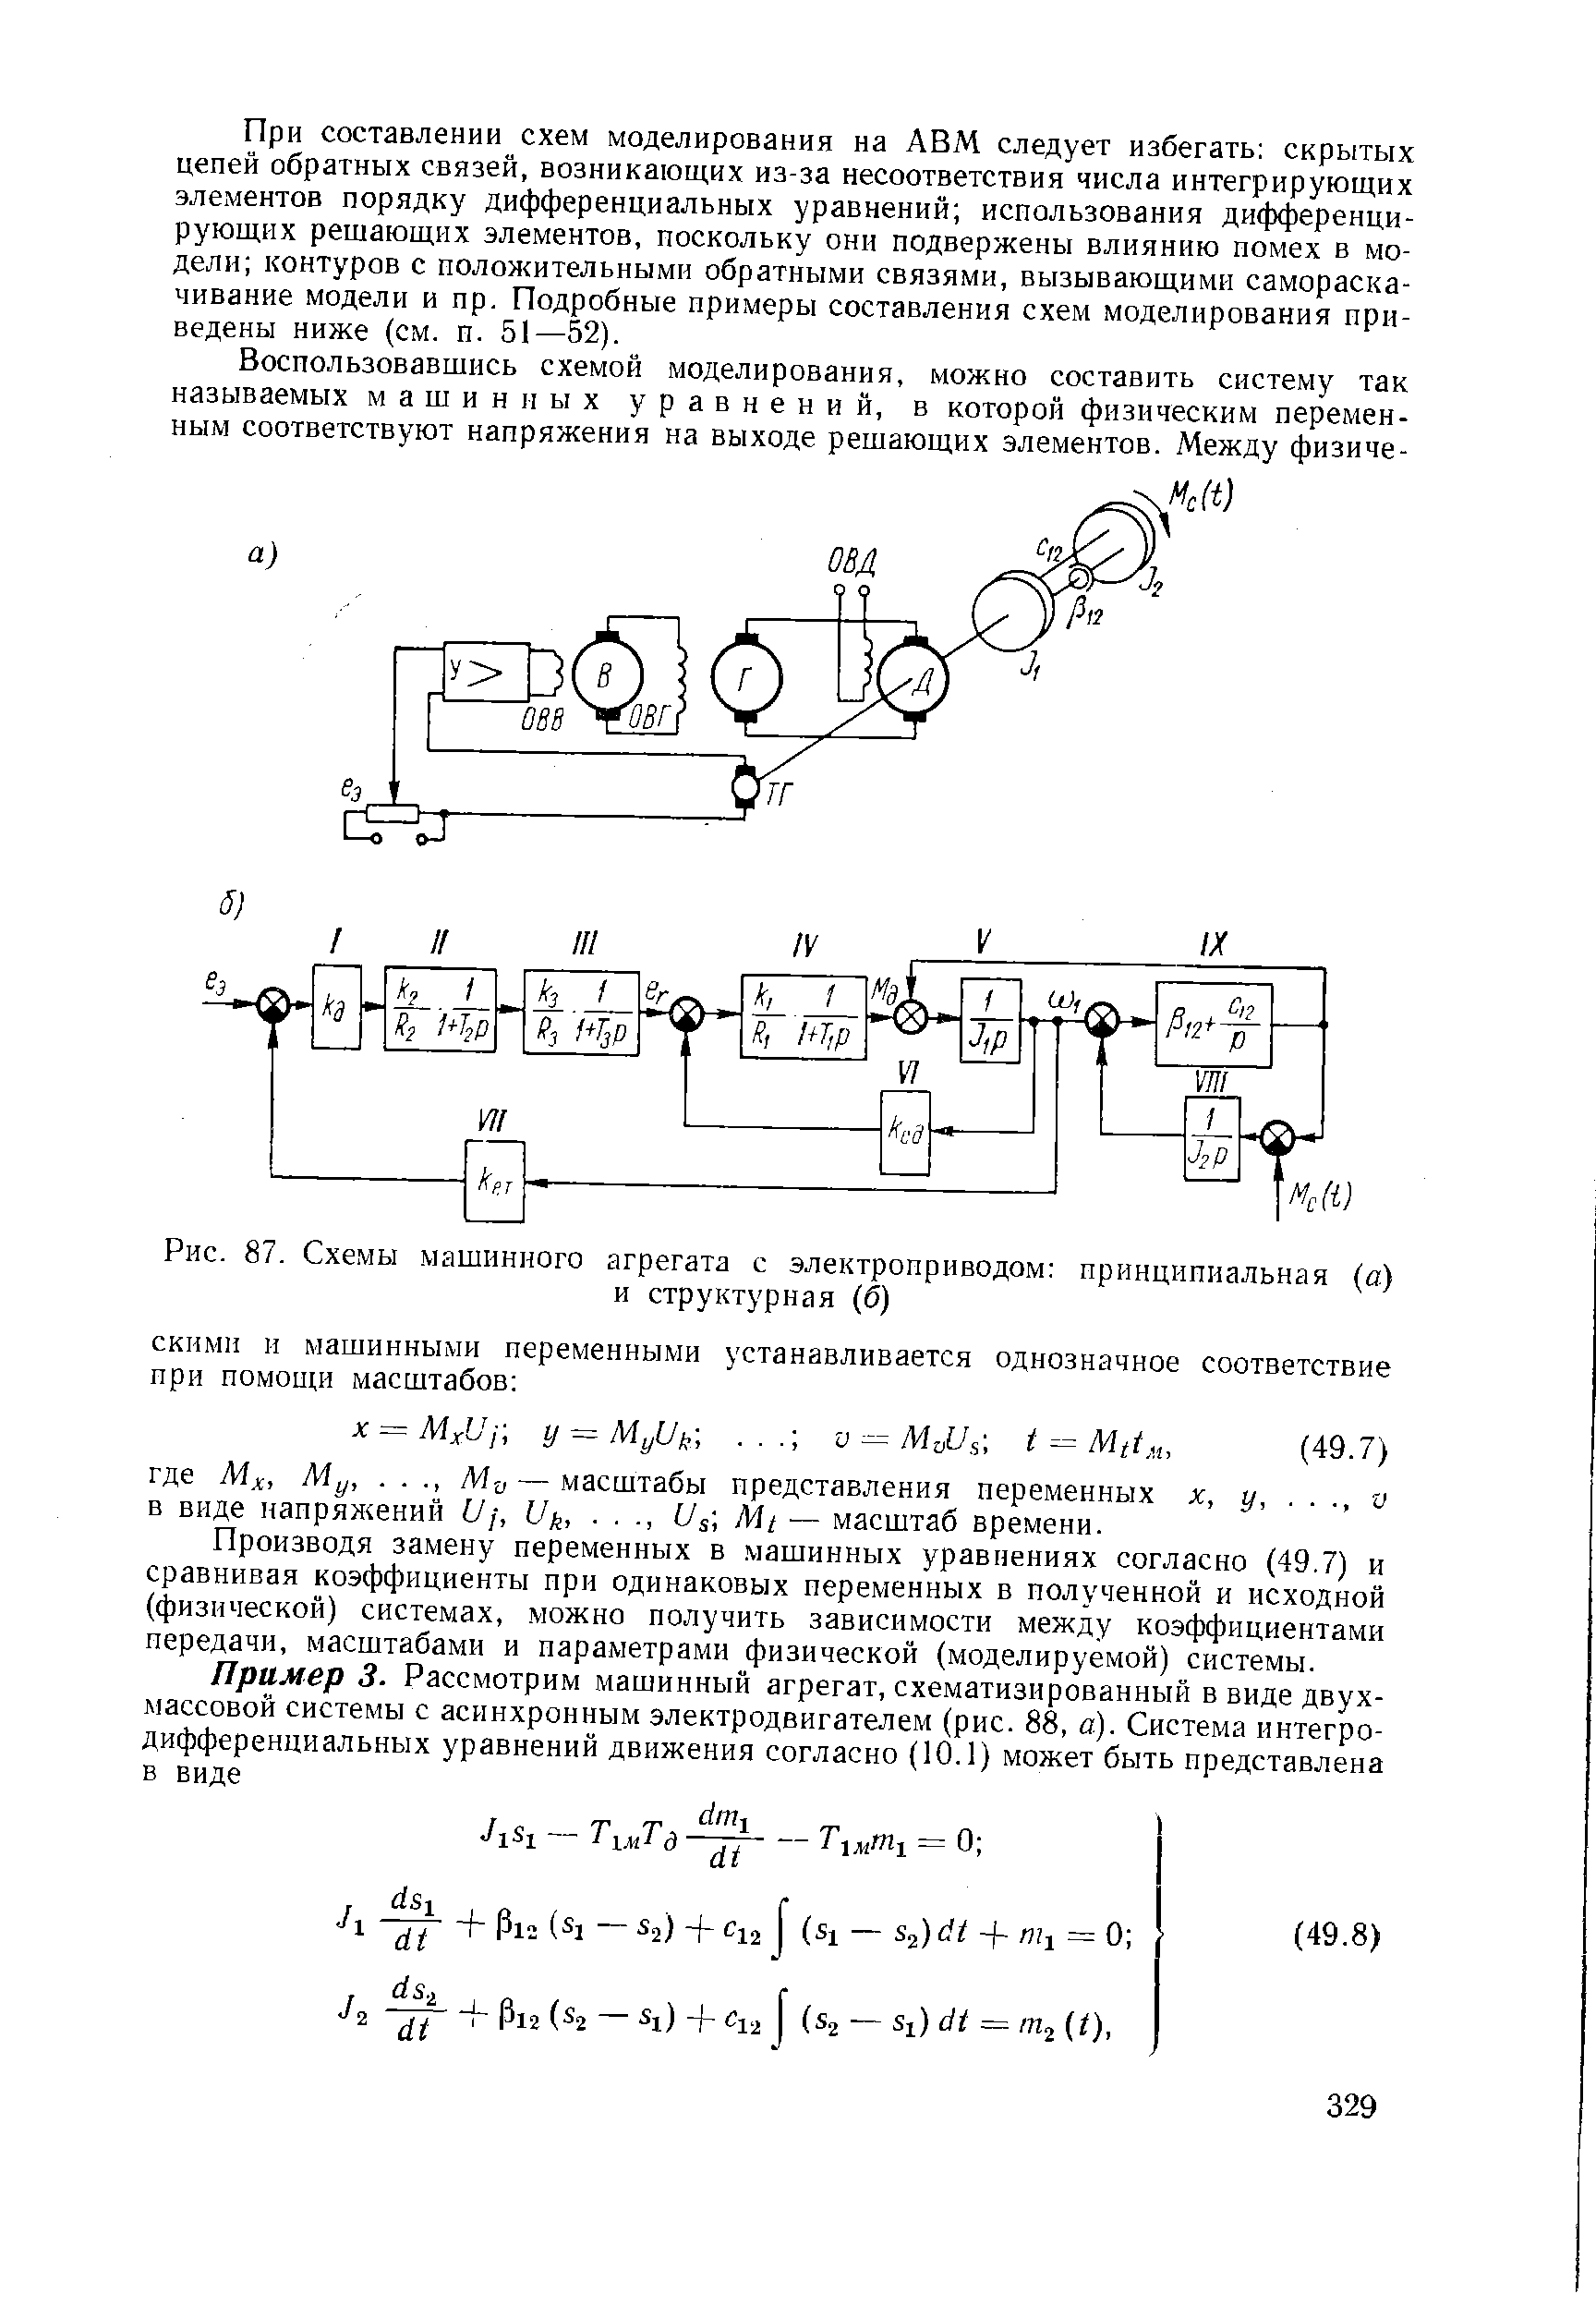 Рис. 87. Схемы машинного агрегата с электроприводом принципиальная (а)
